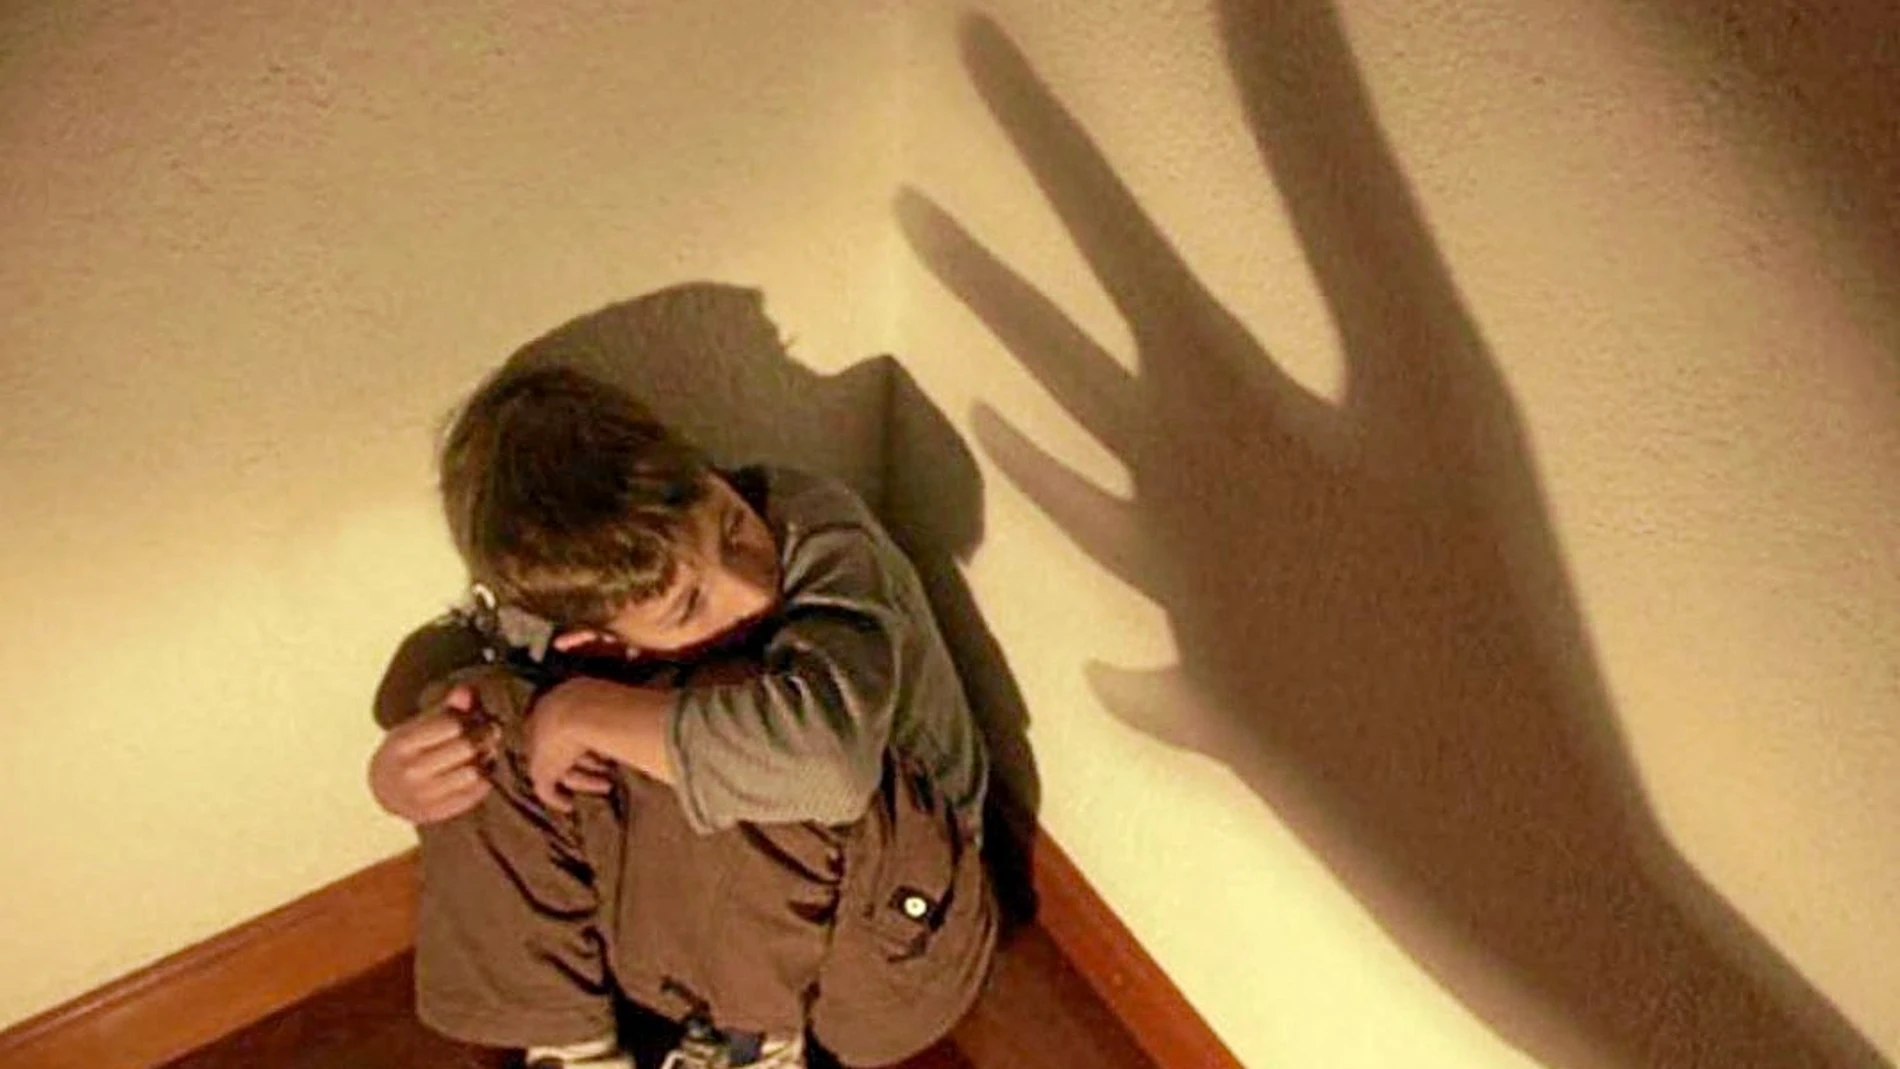 Los efectos de los abusos sexuales en los menores pueden ser graves e incluyen por ejemplo miedos, fobias y depresiones